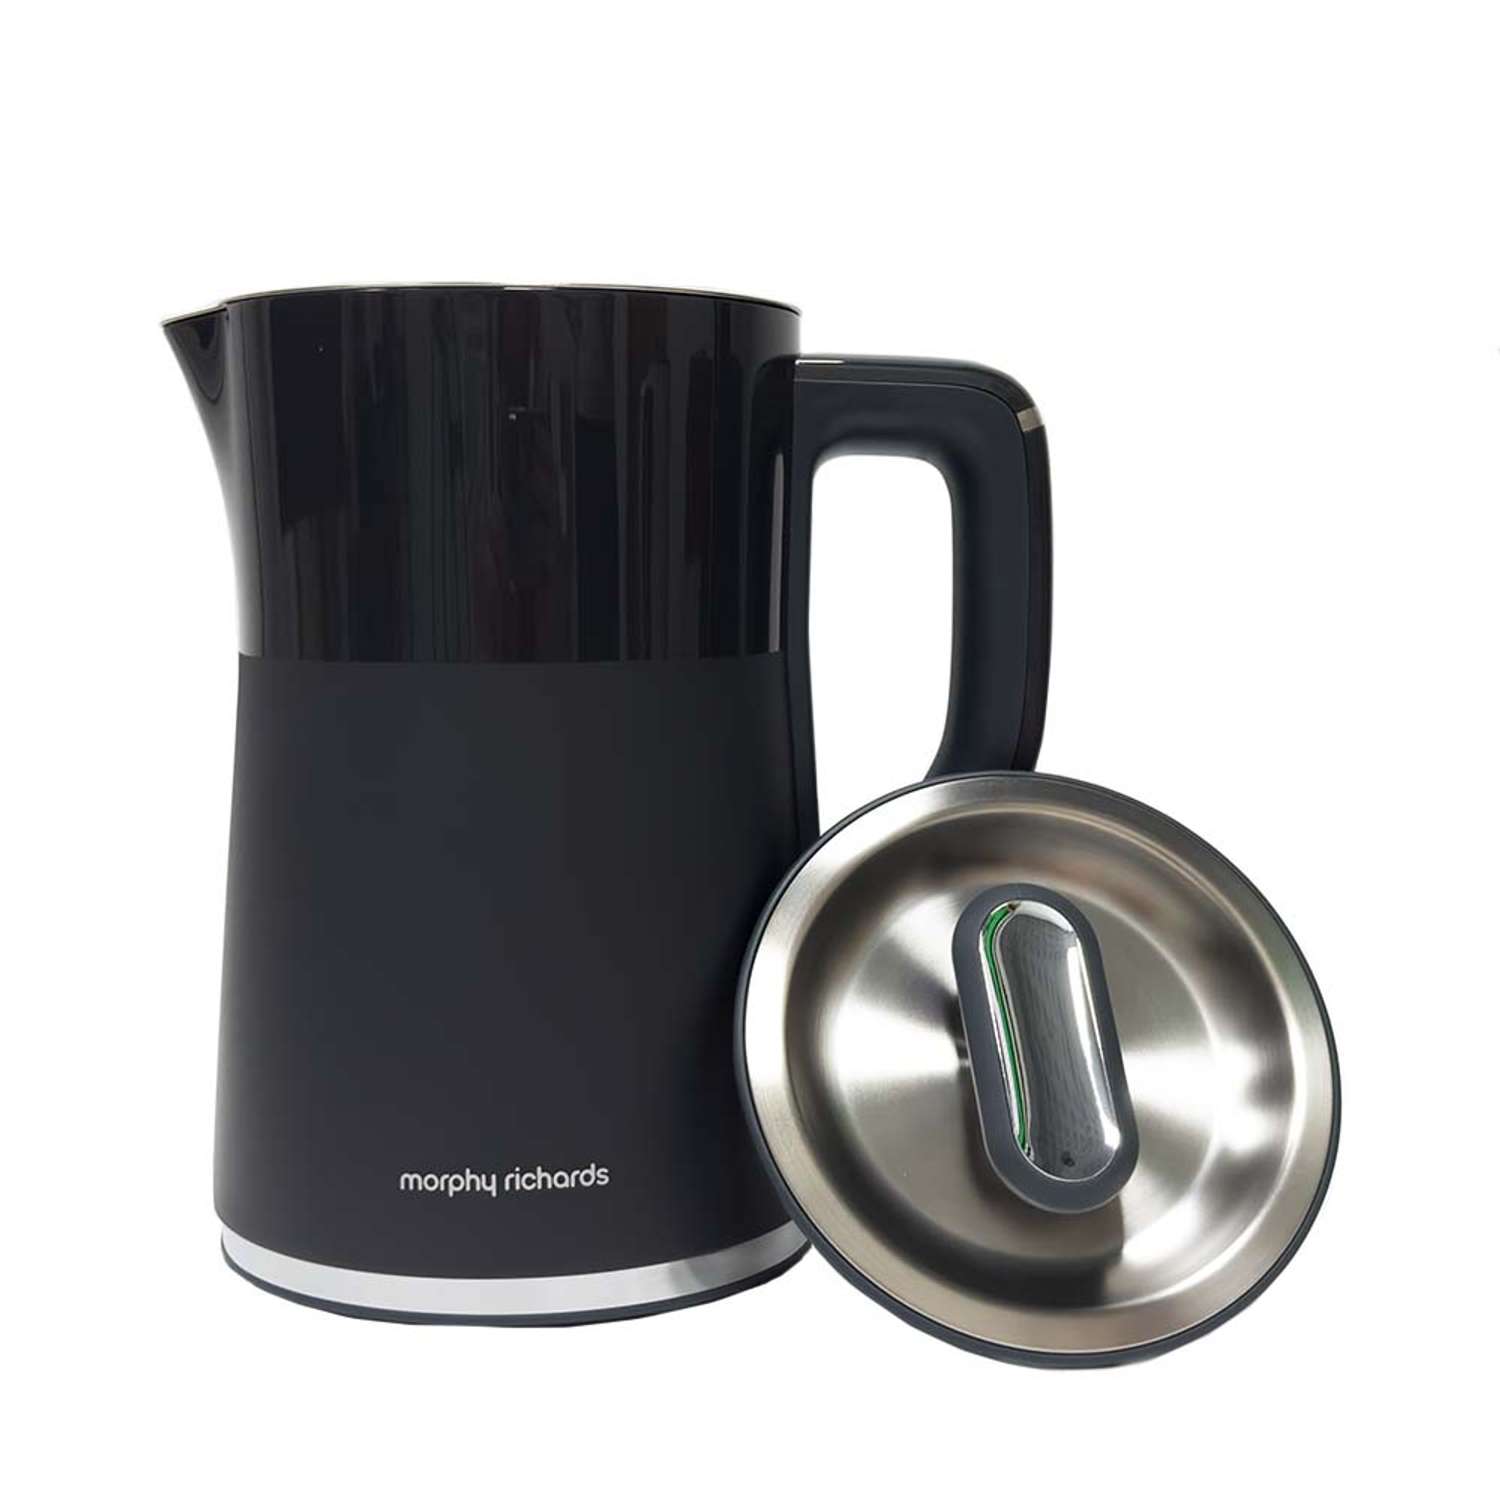 Электрический чайник Morphy Richards с выбором температуры harmony mr6070g серый - фото 1